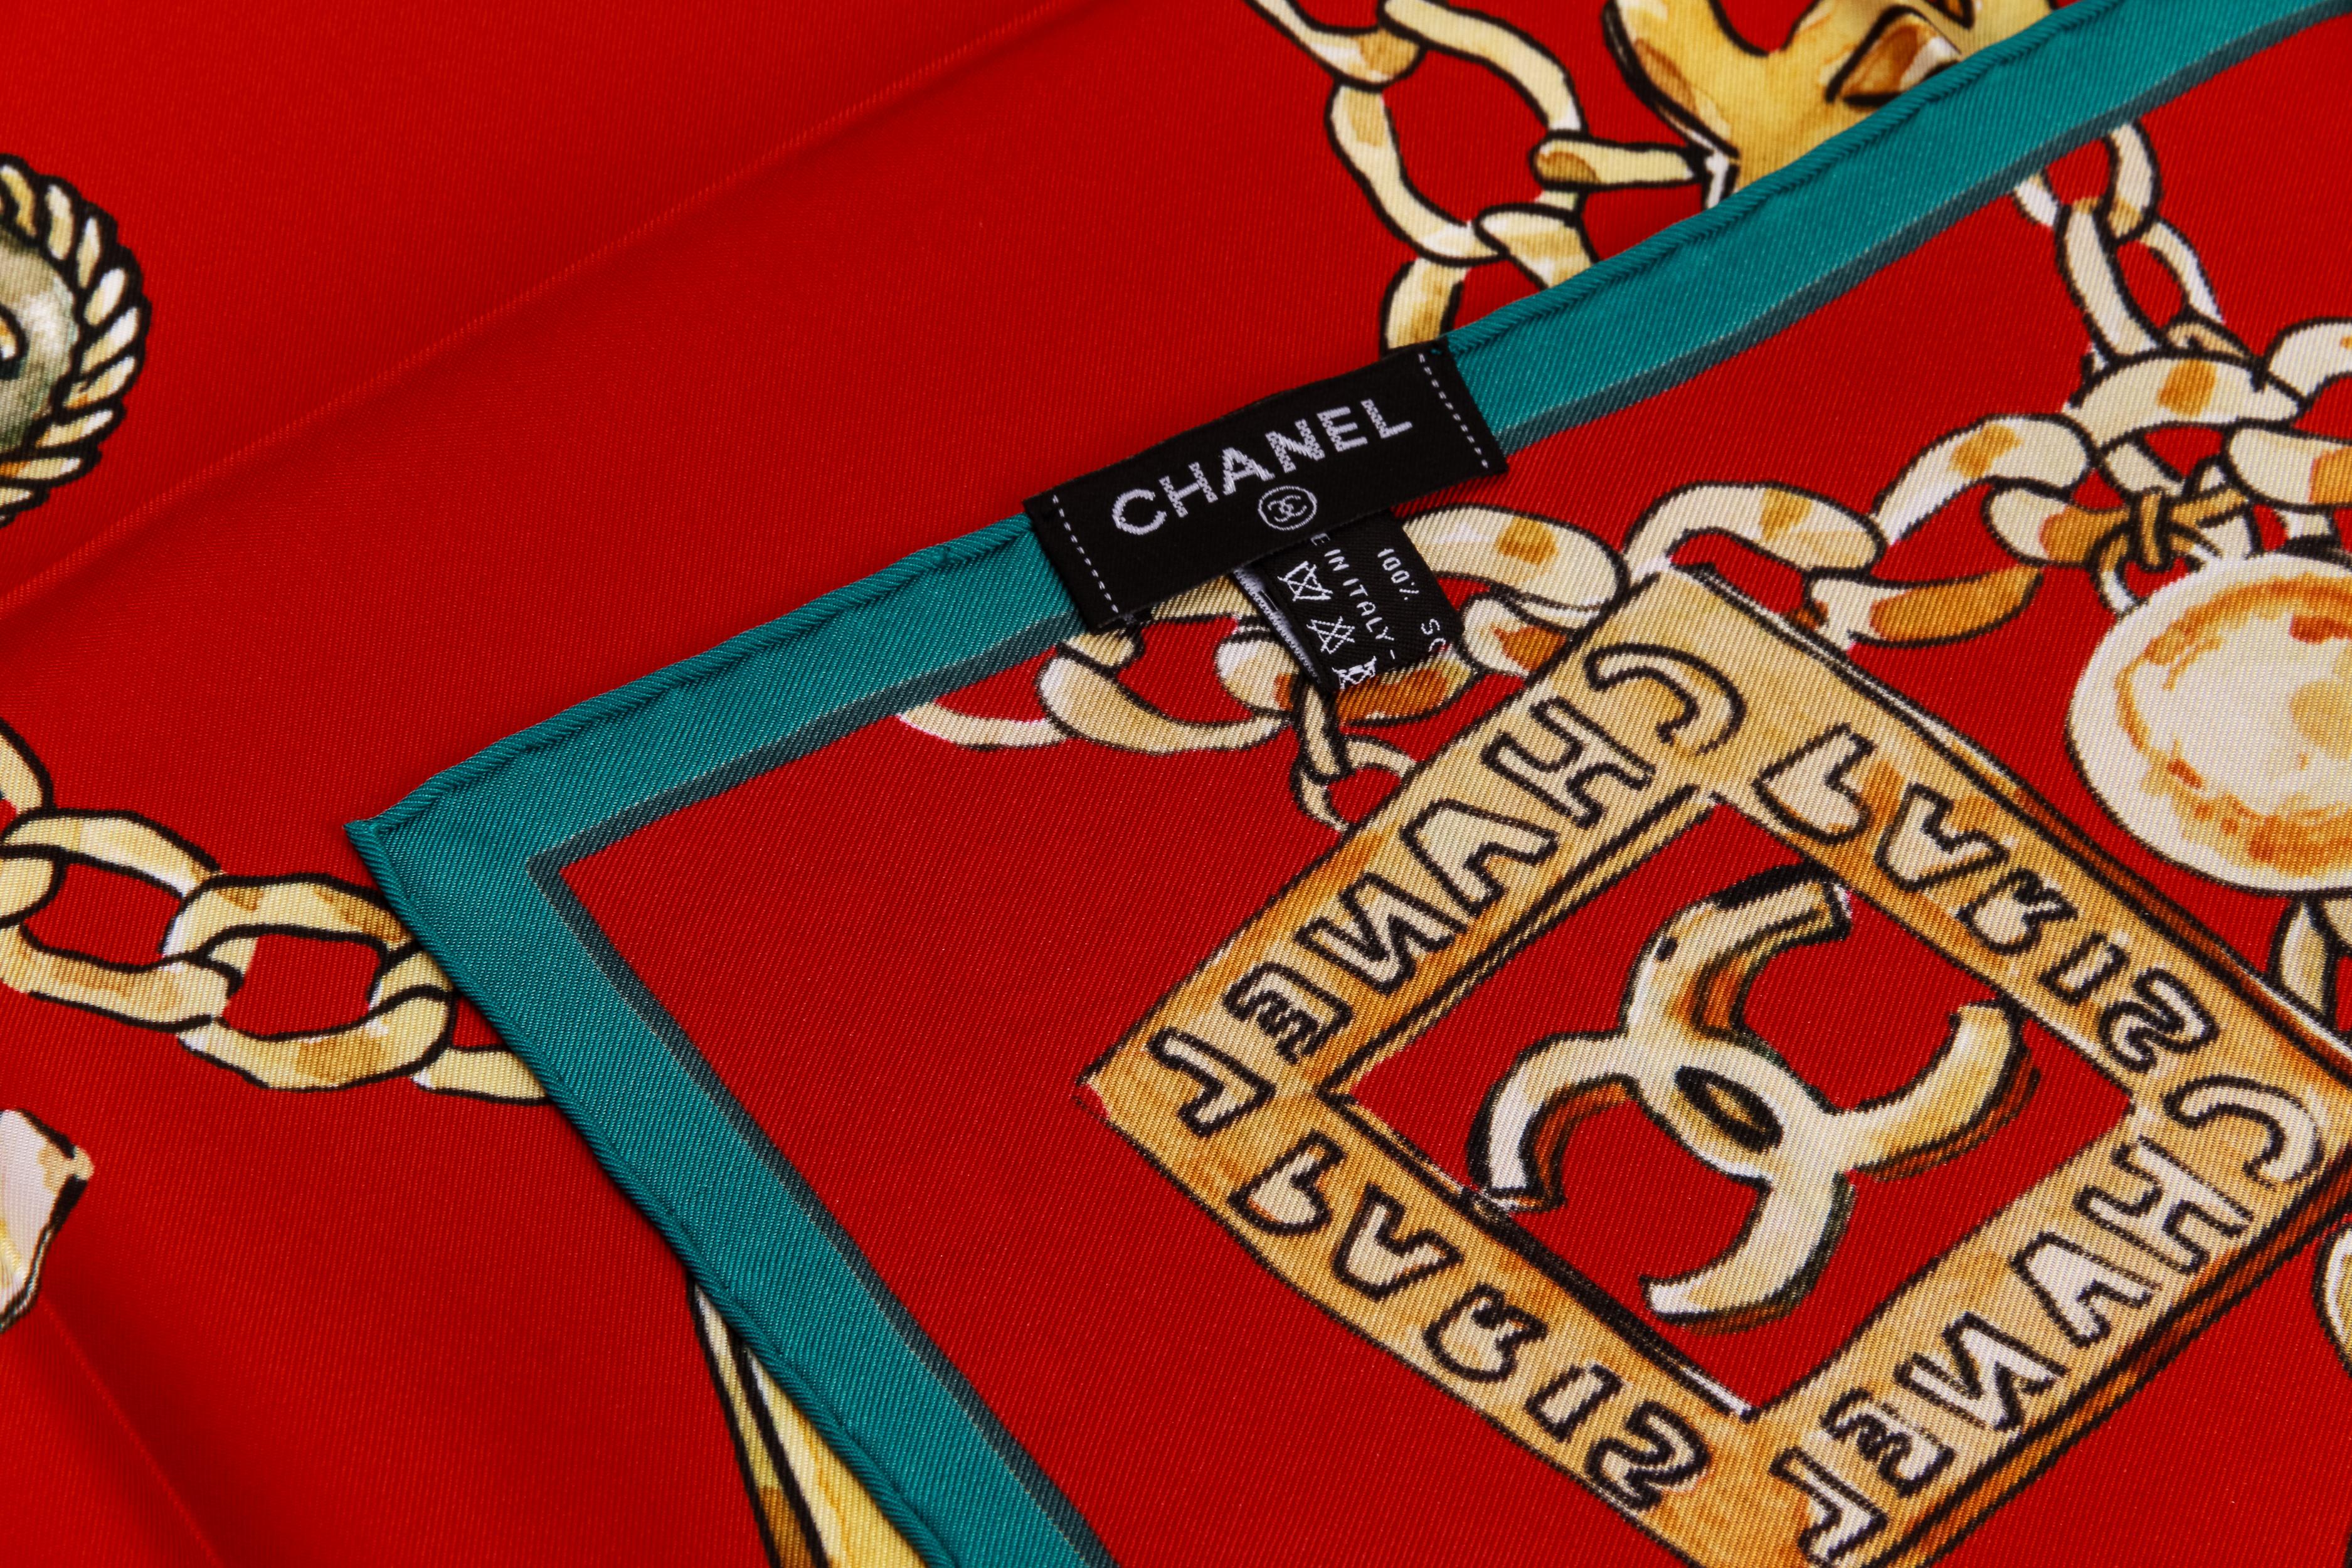 Chanel nouveau foulard 100% soie. Design/One, gripoix et logos iconiques de la bijouterie des années 70. Rouge avec garniture verte. Étiquette d'entretien jointe.
